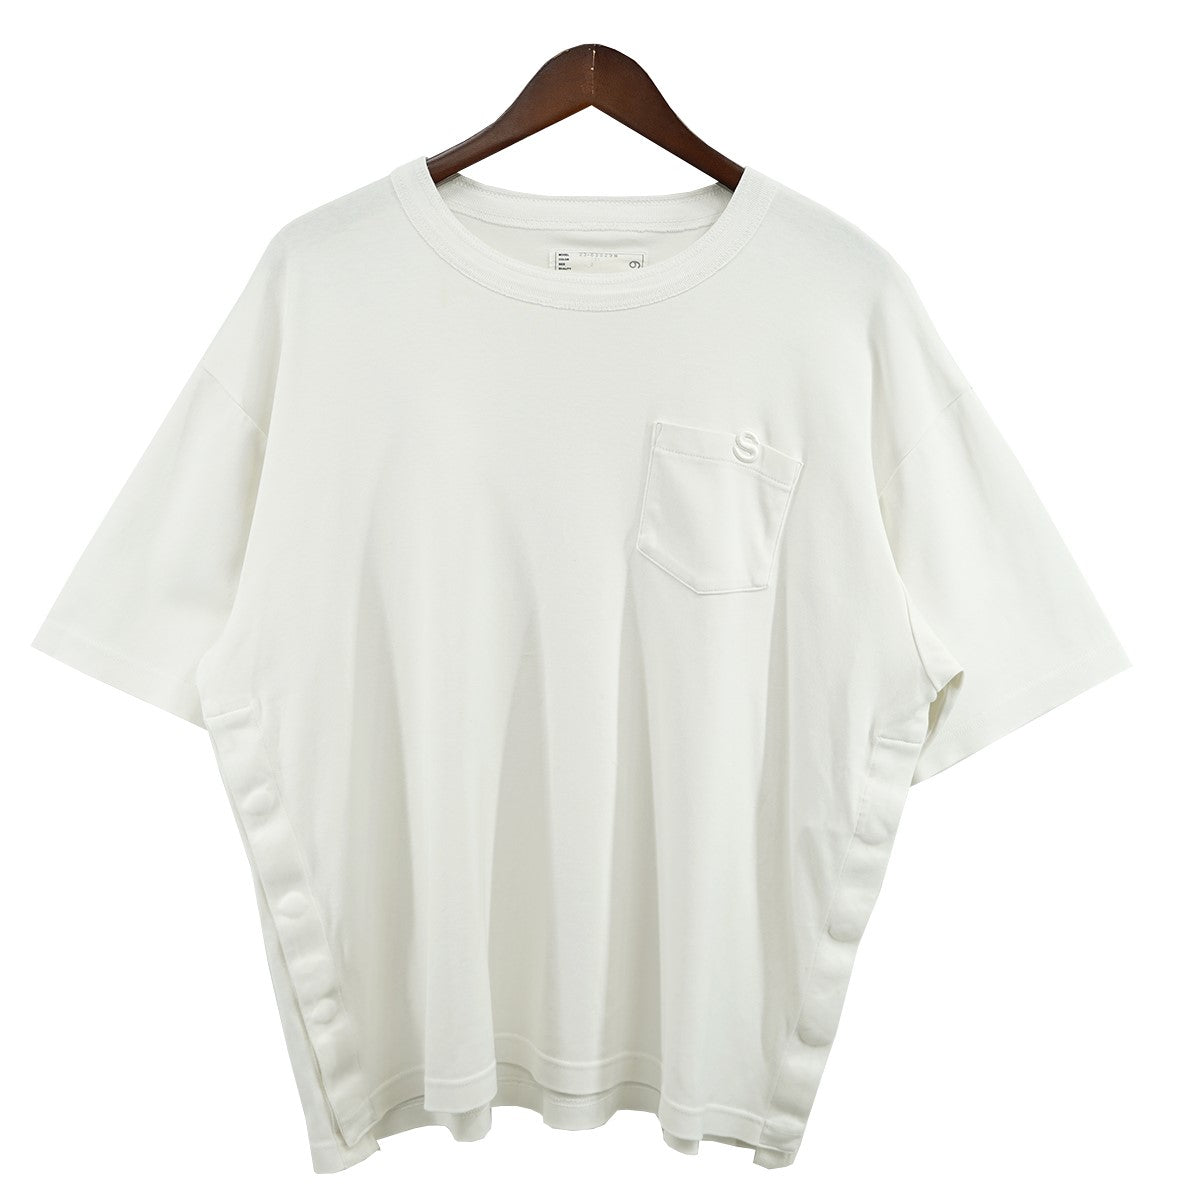 sacai(サカイ) 23SS S Cotton Jersey T-Shirt Sロゴ コットン ...